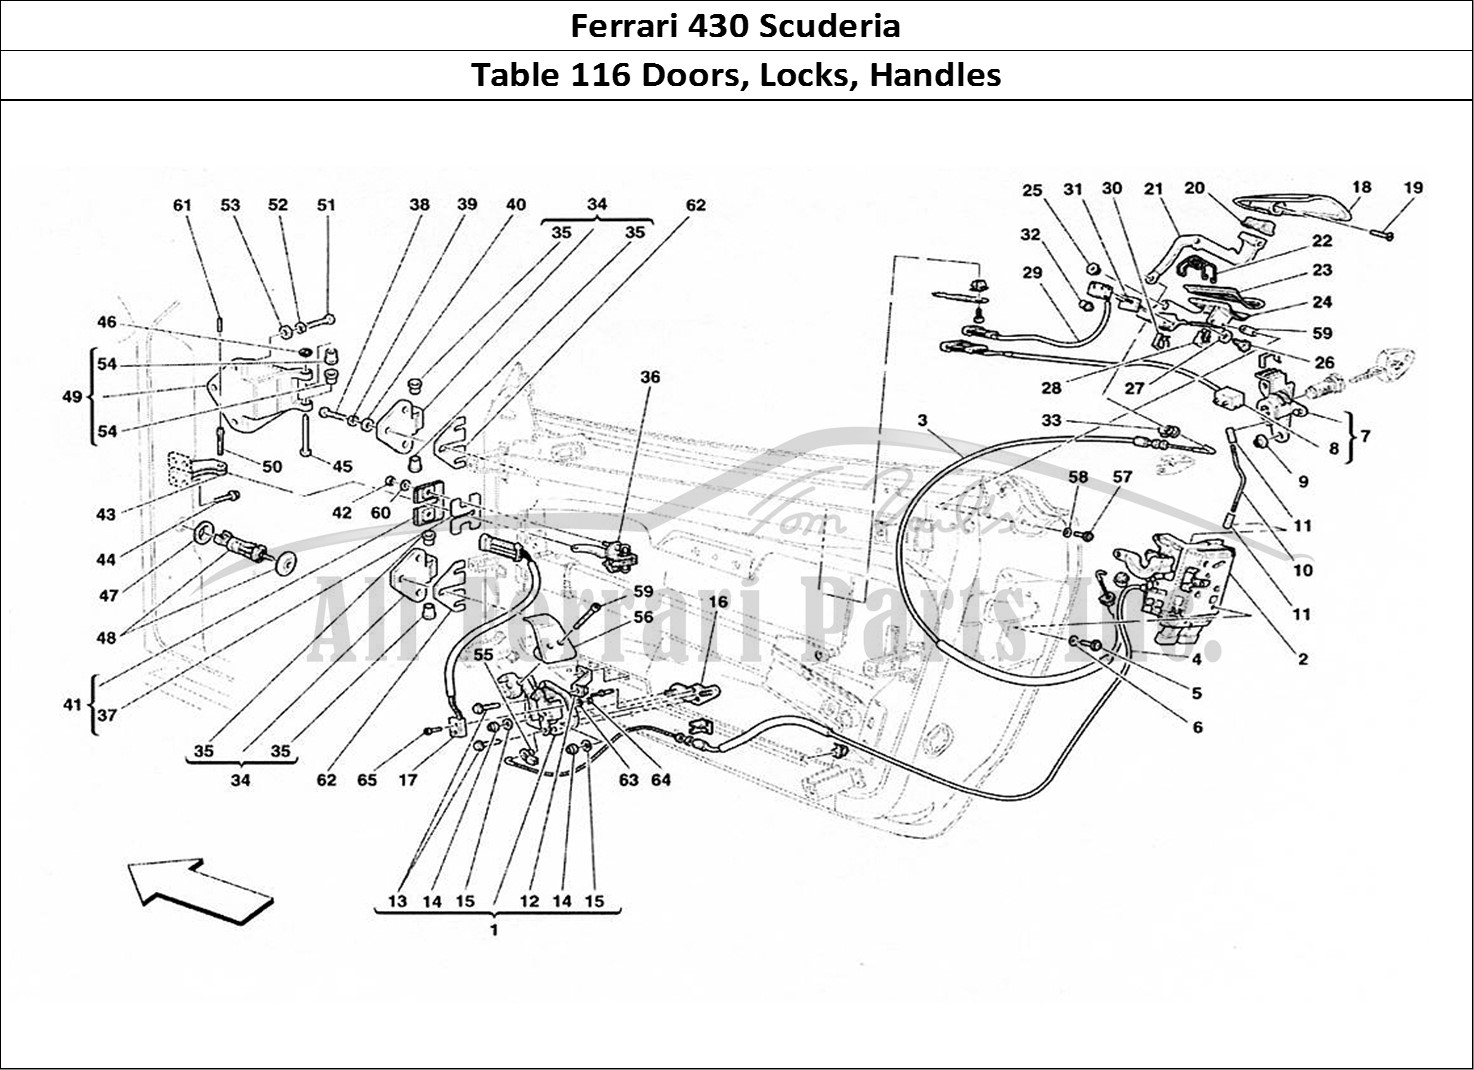 Ferrari Parts Ferrari 430 Scuderia Page 116 Doors - Locks and Handles